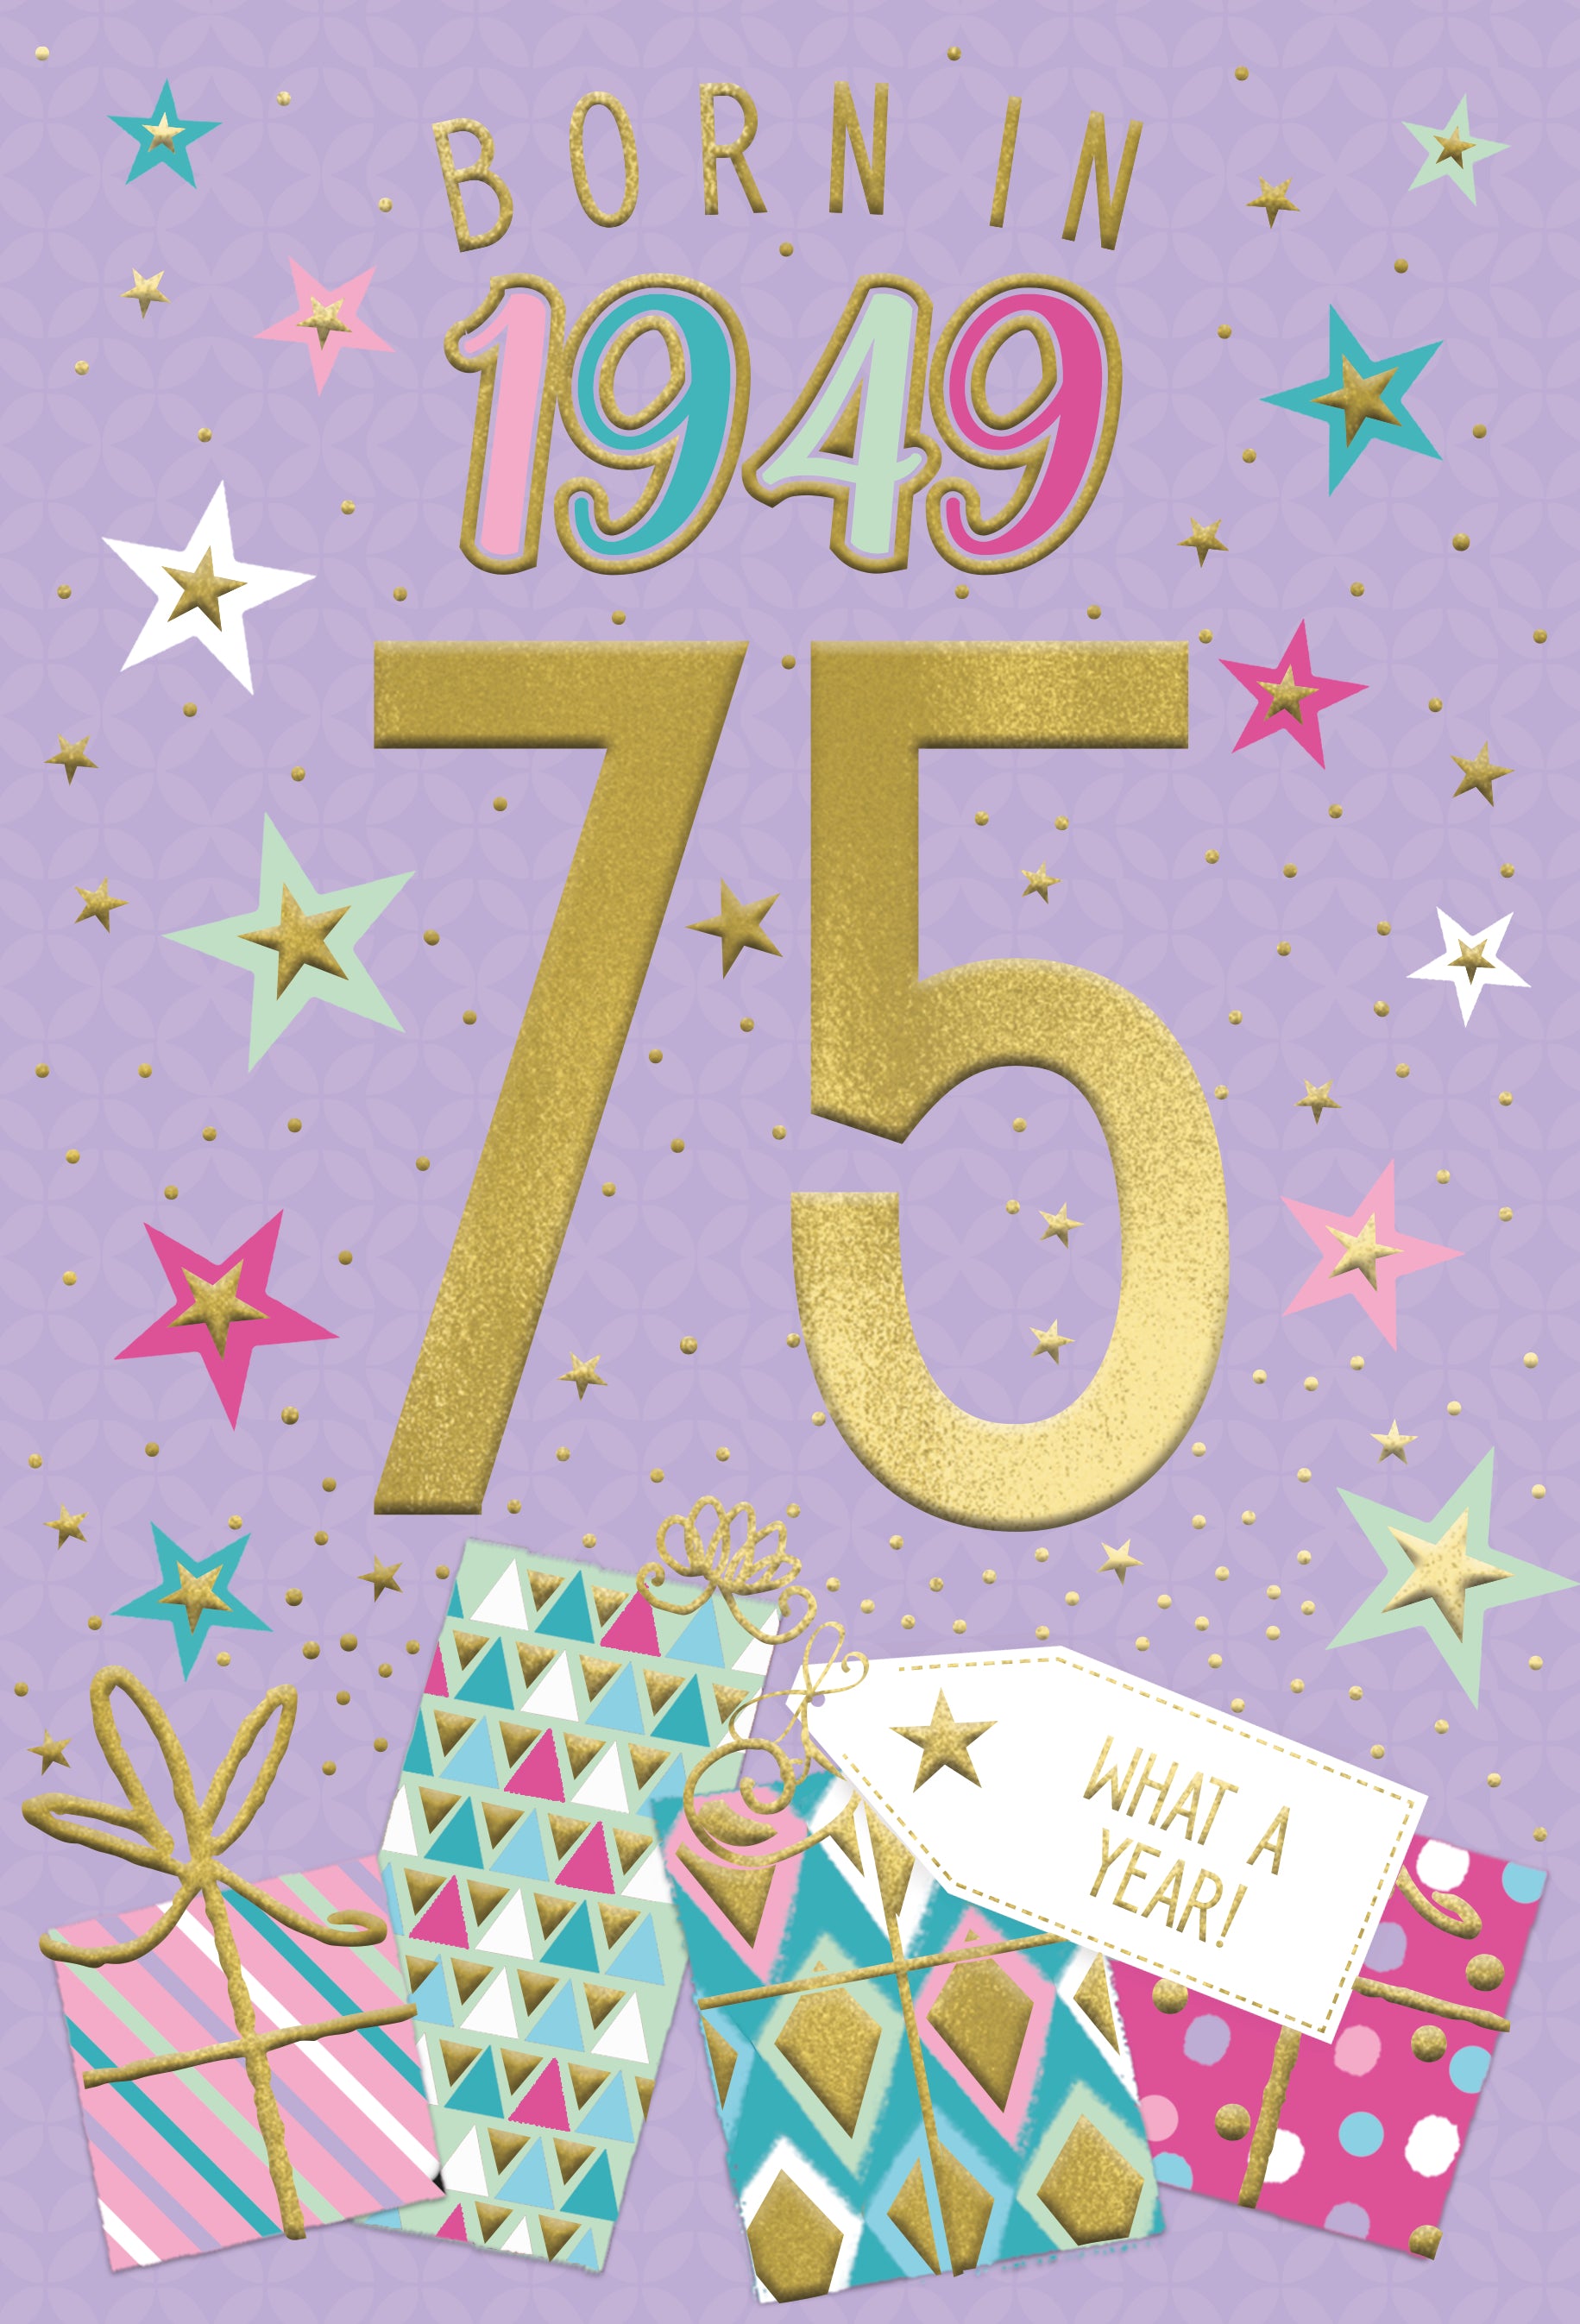 75th birthday card - born in 1949